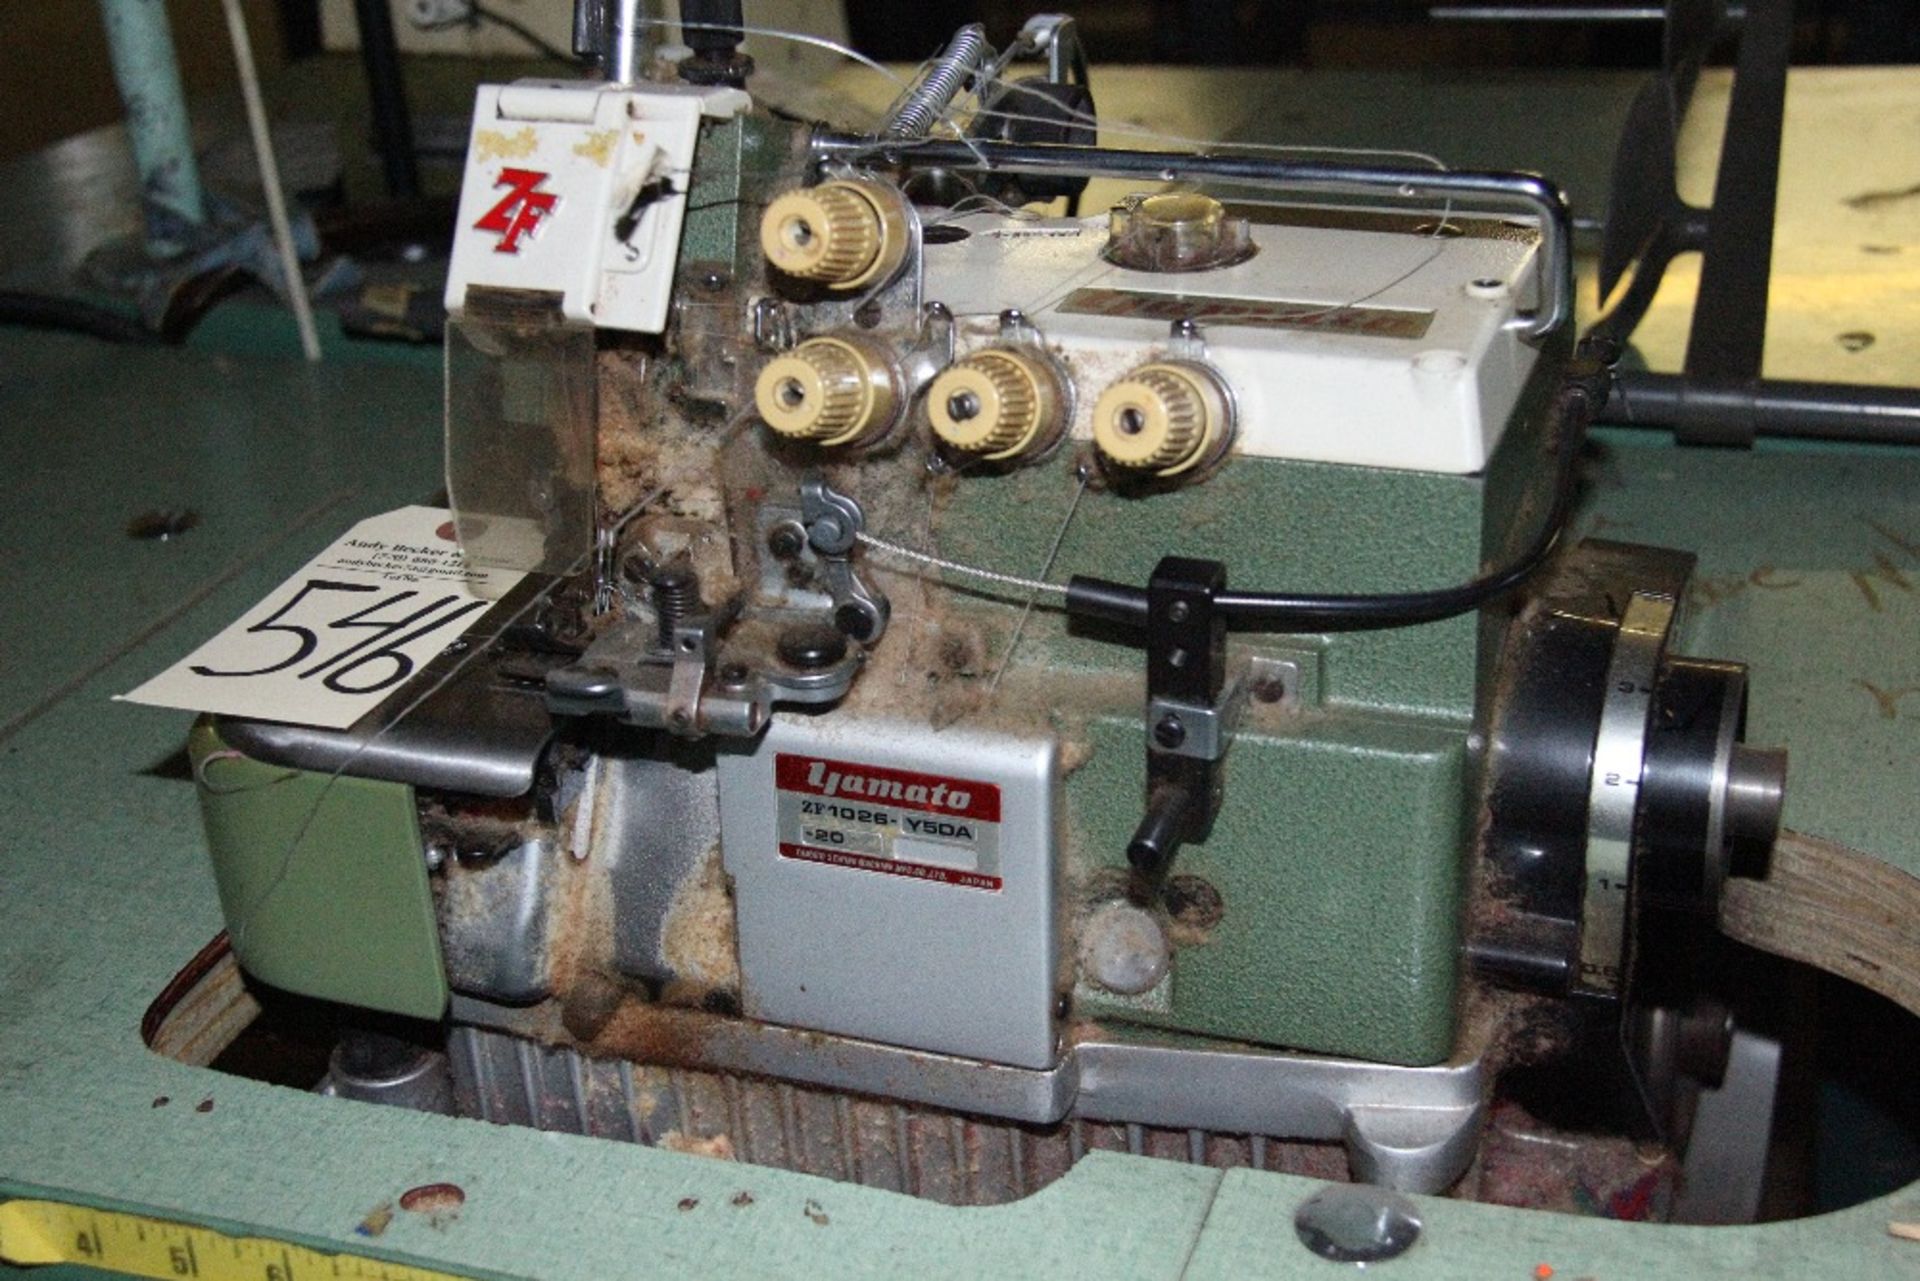 Yamato ZF1026 4-Thread Mock Safety Stitch Sewing Machine - Image 2 of 4